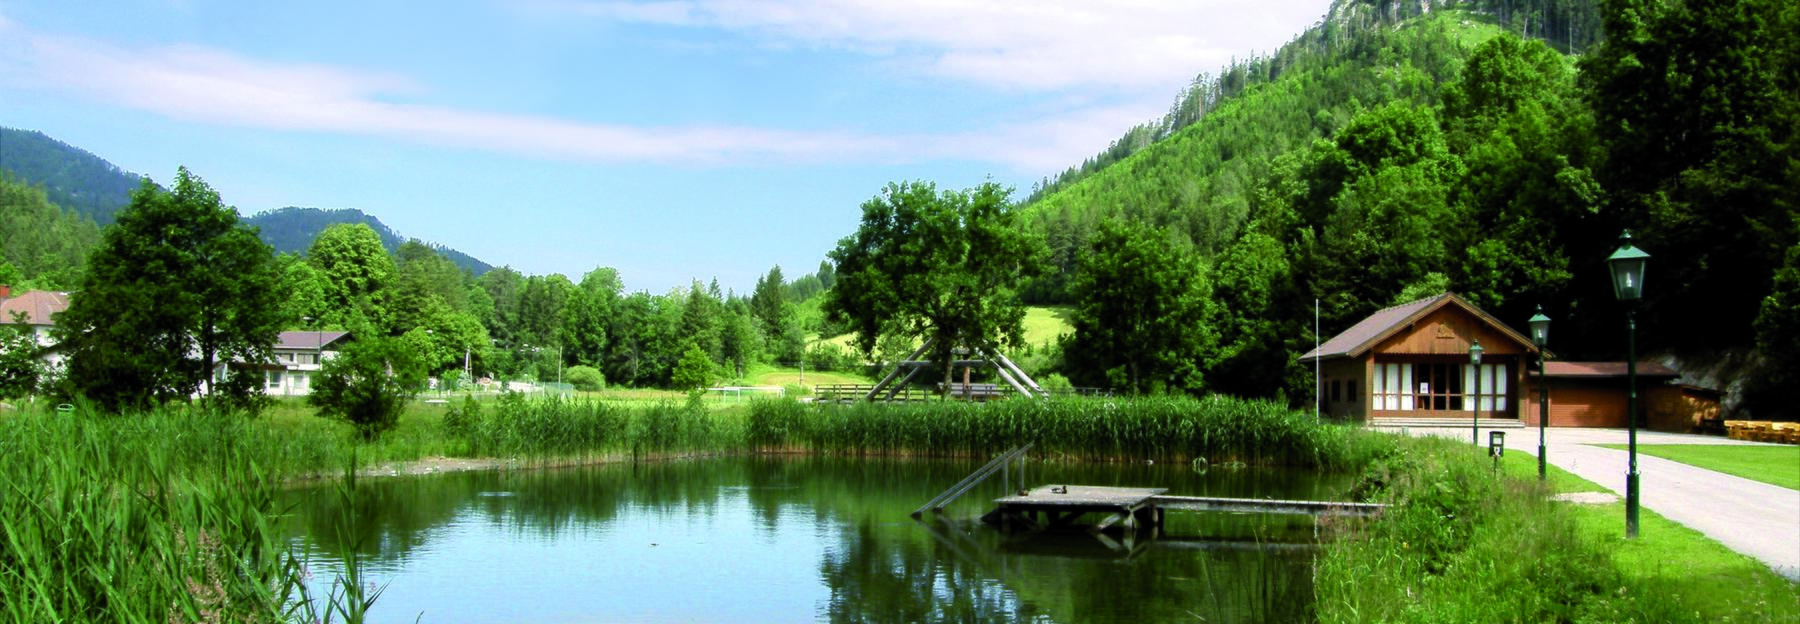 Teich im Naturpark Falkenstein